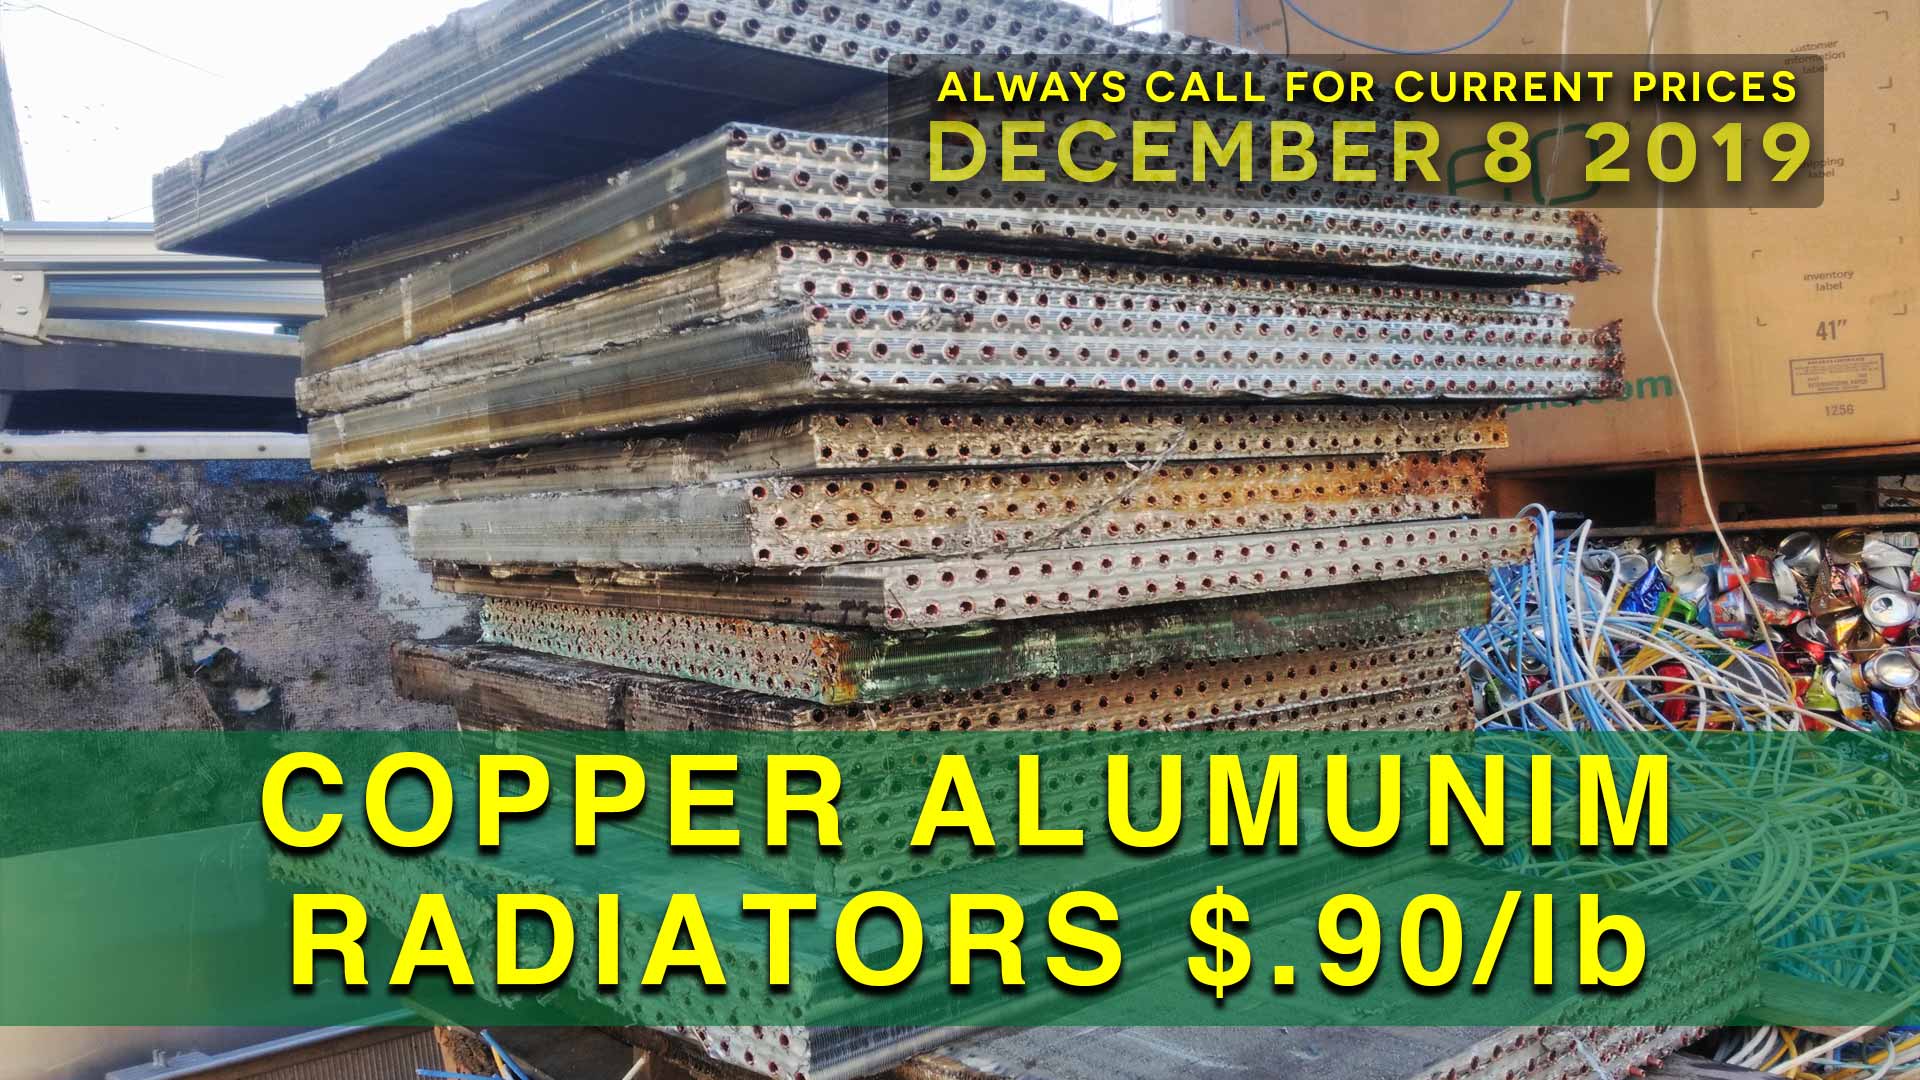 Copper Aluminum Radiators $.90 lb.